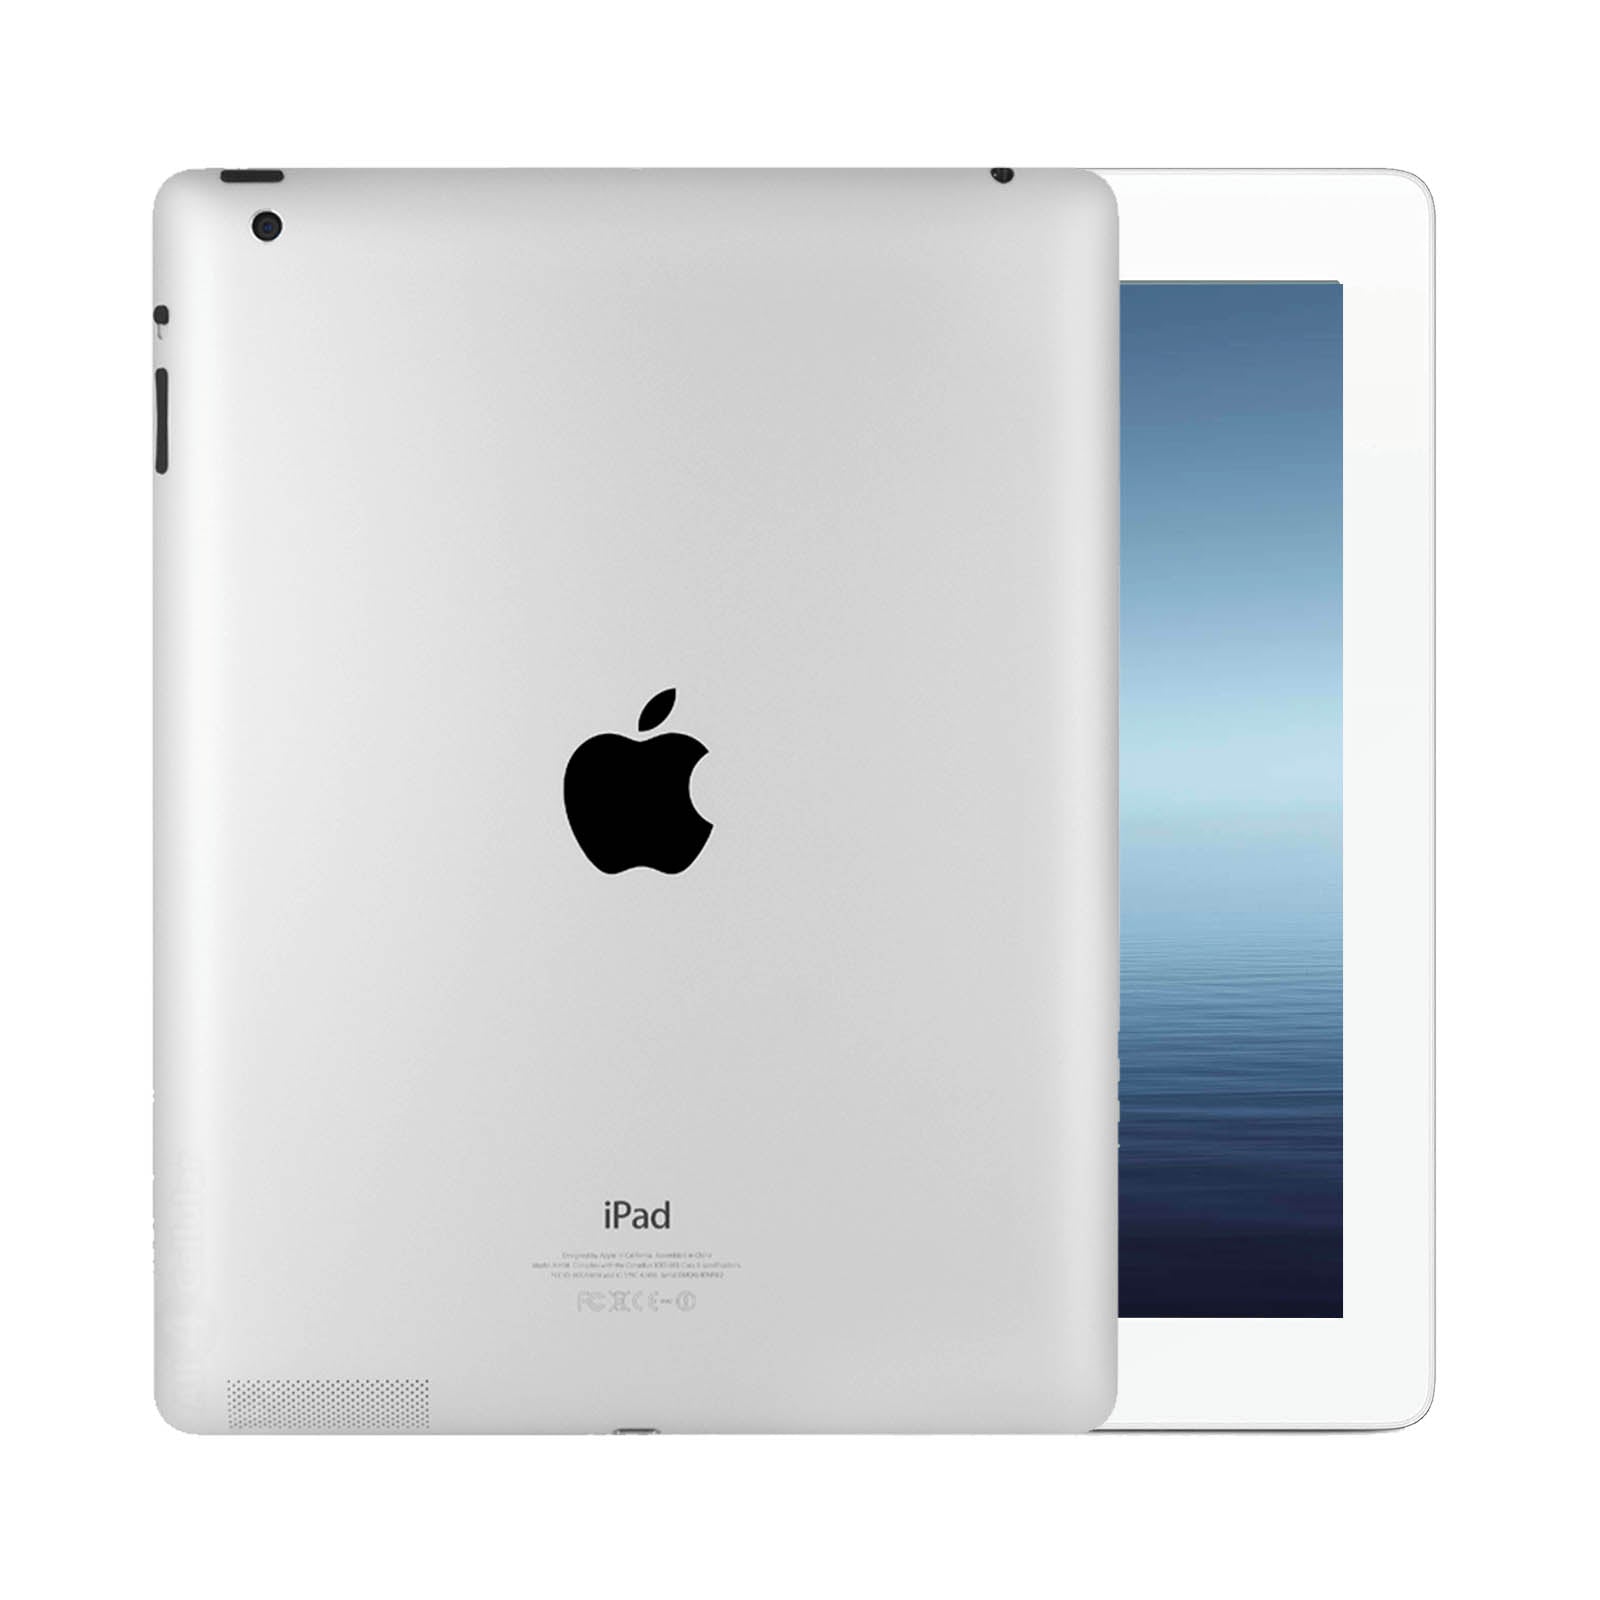 Apple iPad 3 64GB White Good - WiFI